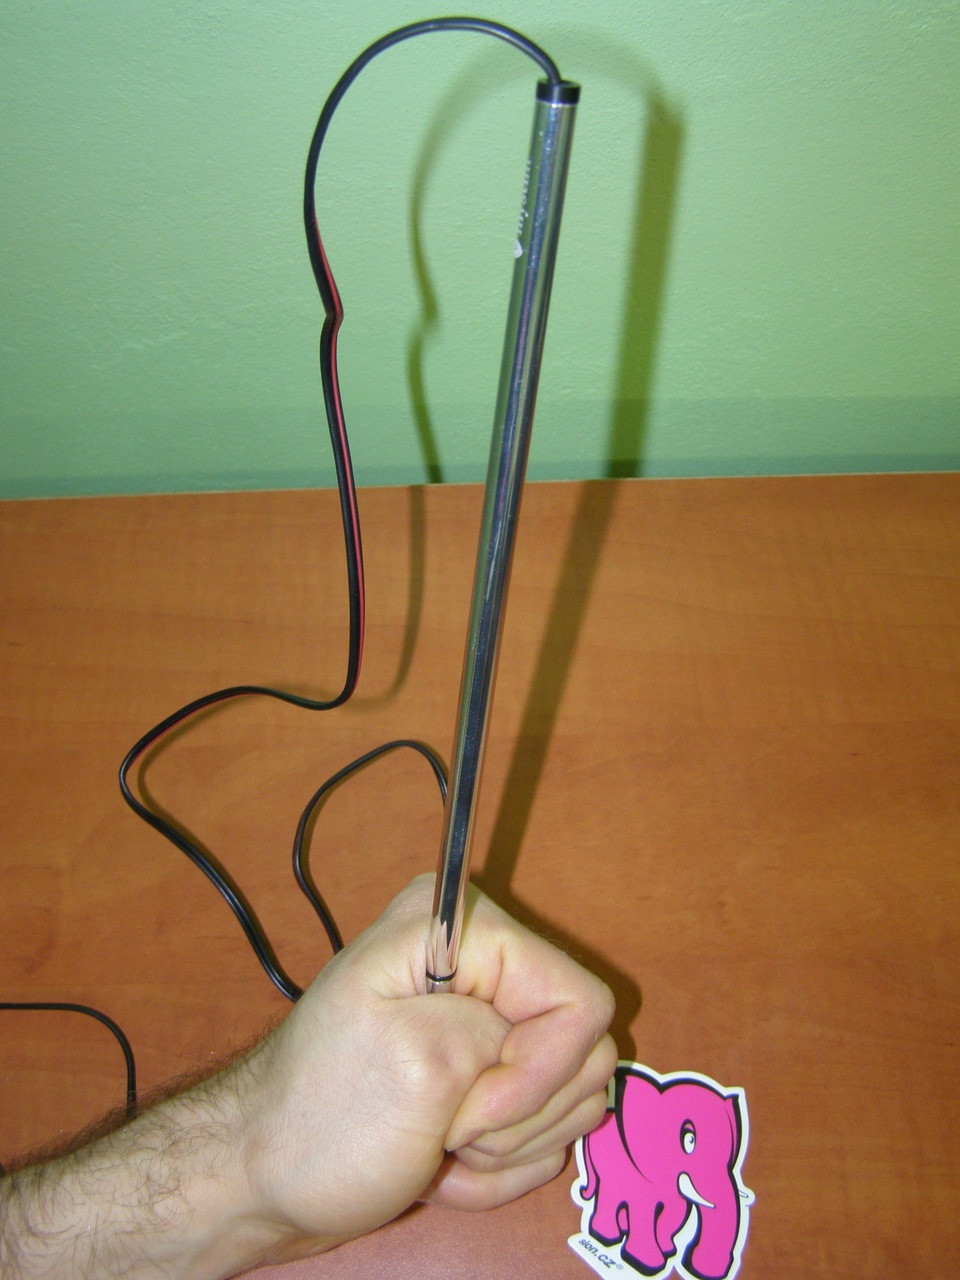 Thin Finn - elektrosex do močové trubice 0,8cm